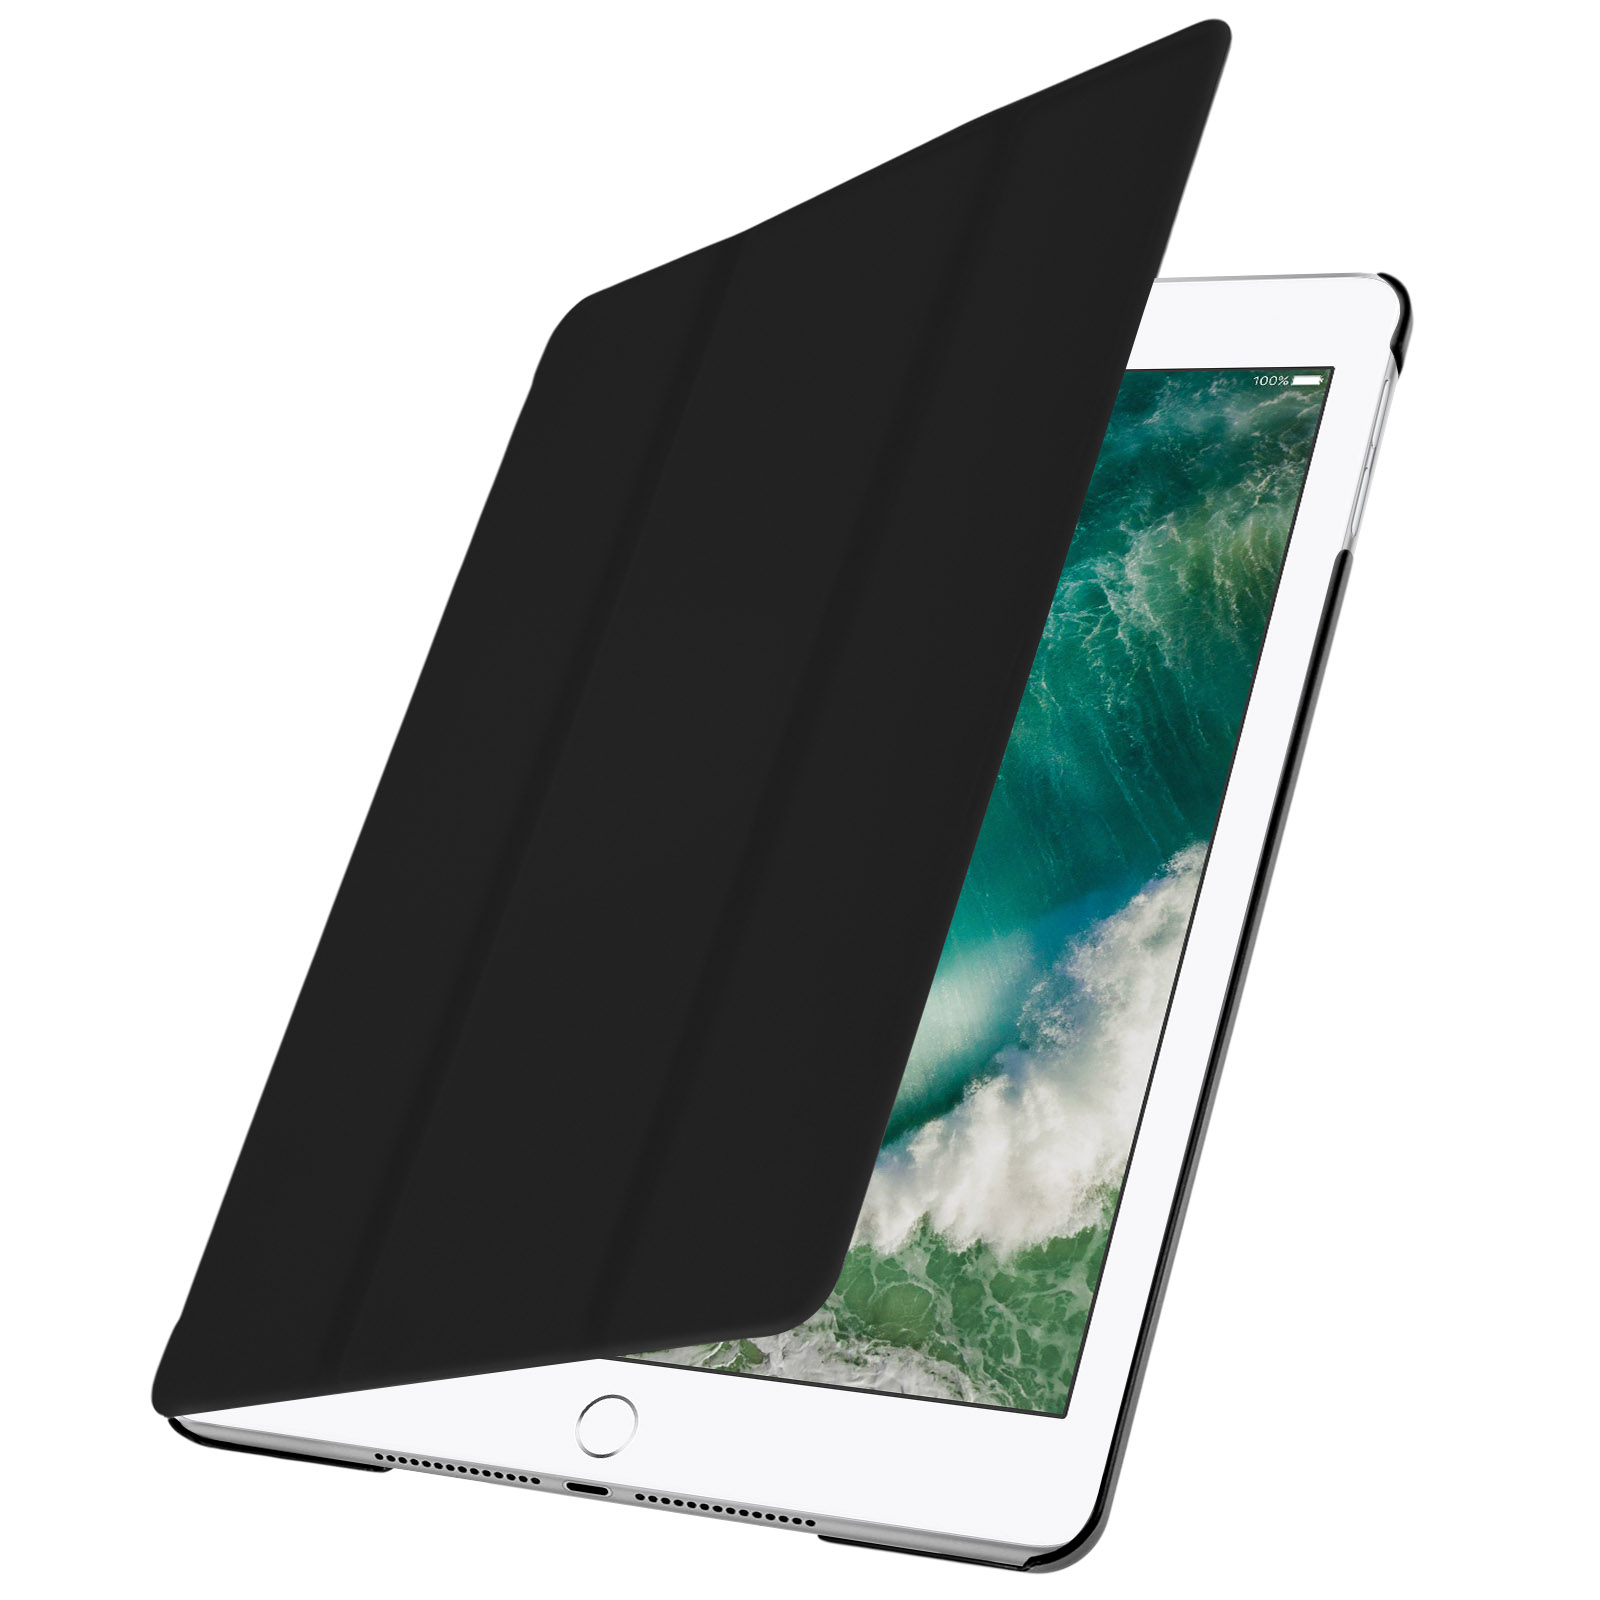 Acheter des accessoires pour Apple iPad Air 2022 sur Gsm55